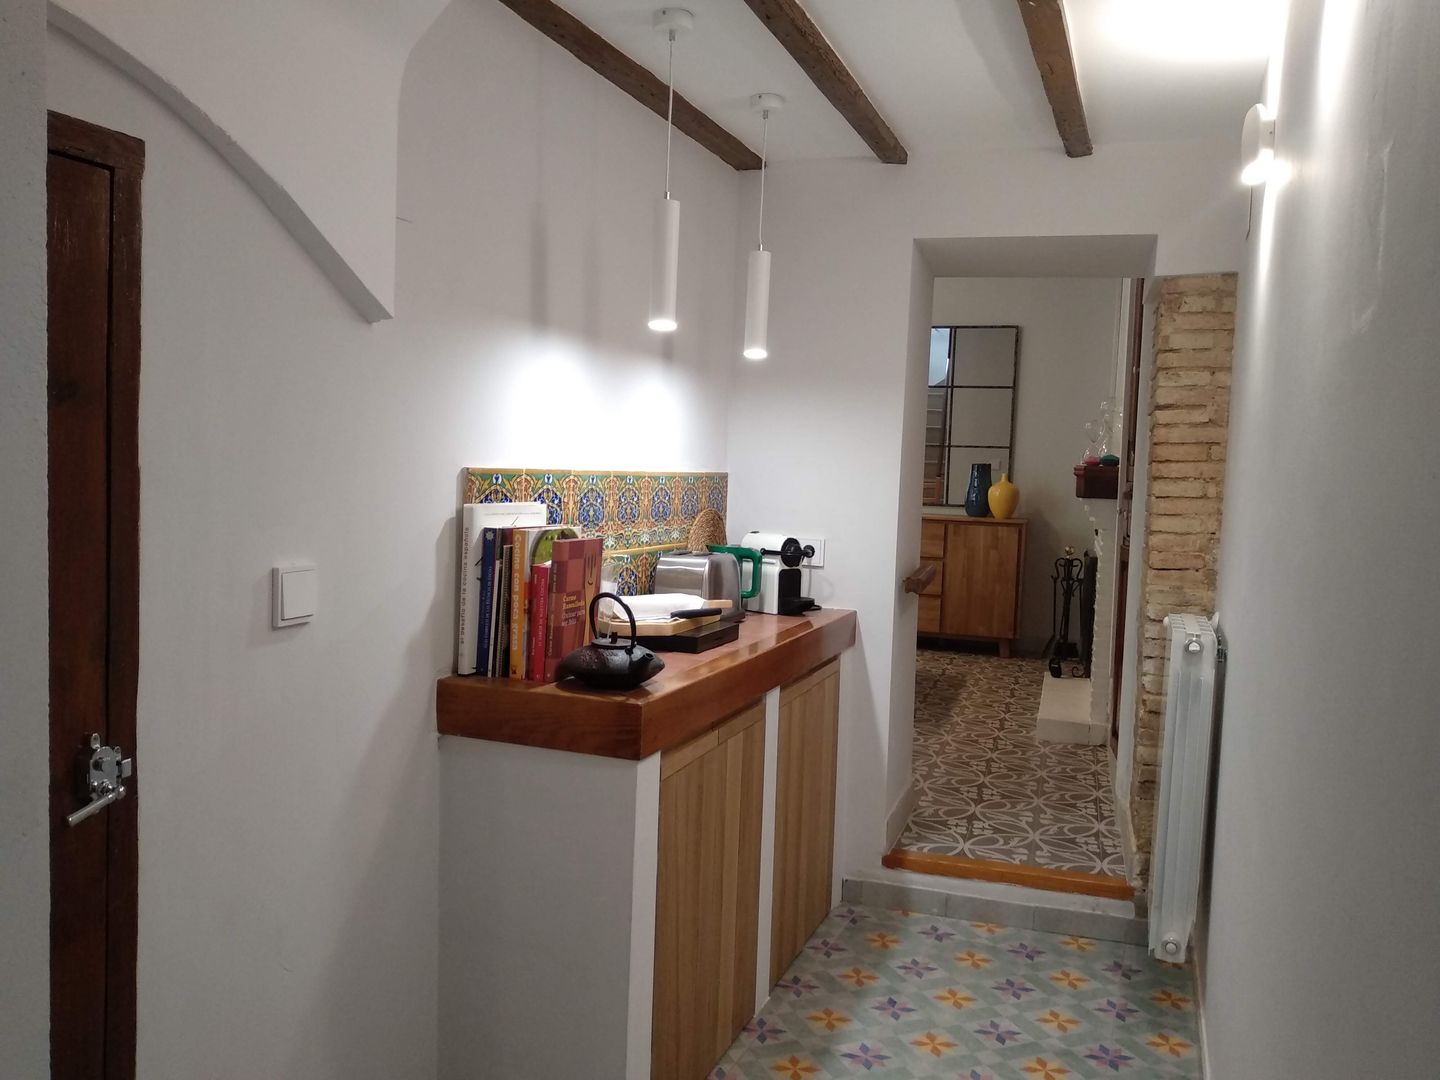 Reforma de pasillo de acceso a la cocina Gestionarq, arquitectos en Xàtiva Pasillos, vestíbulos y escaleras de estilo rústico Madera Acabado en madera